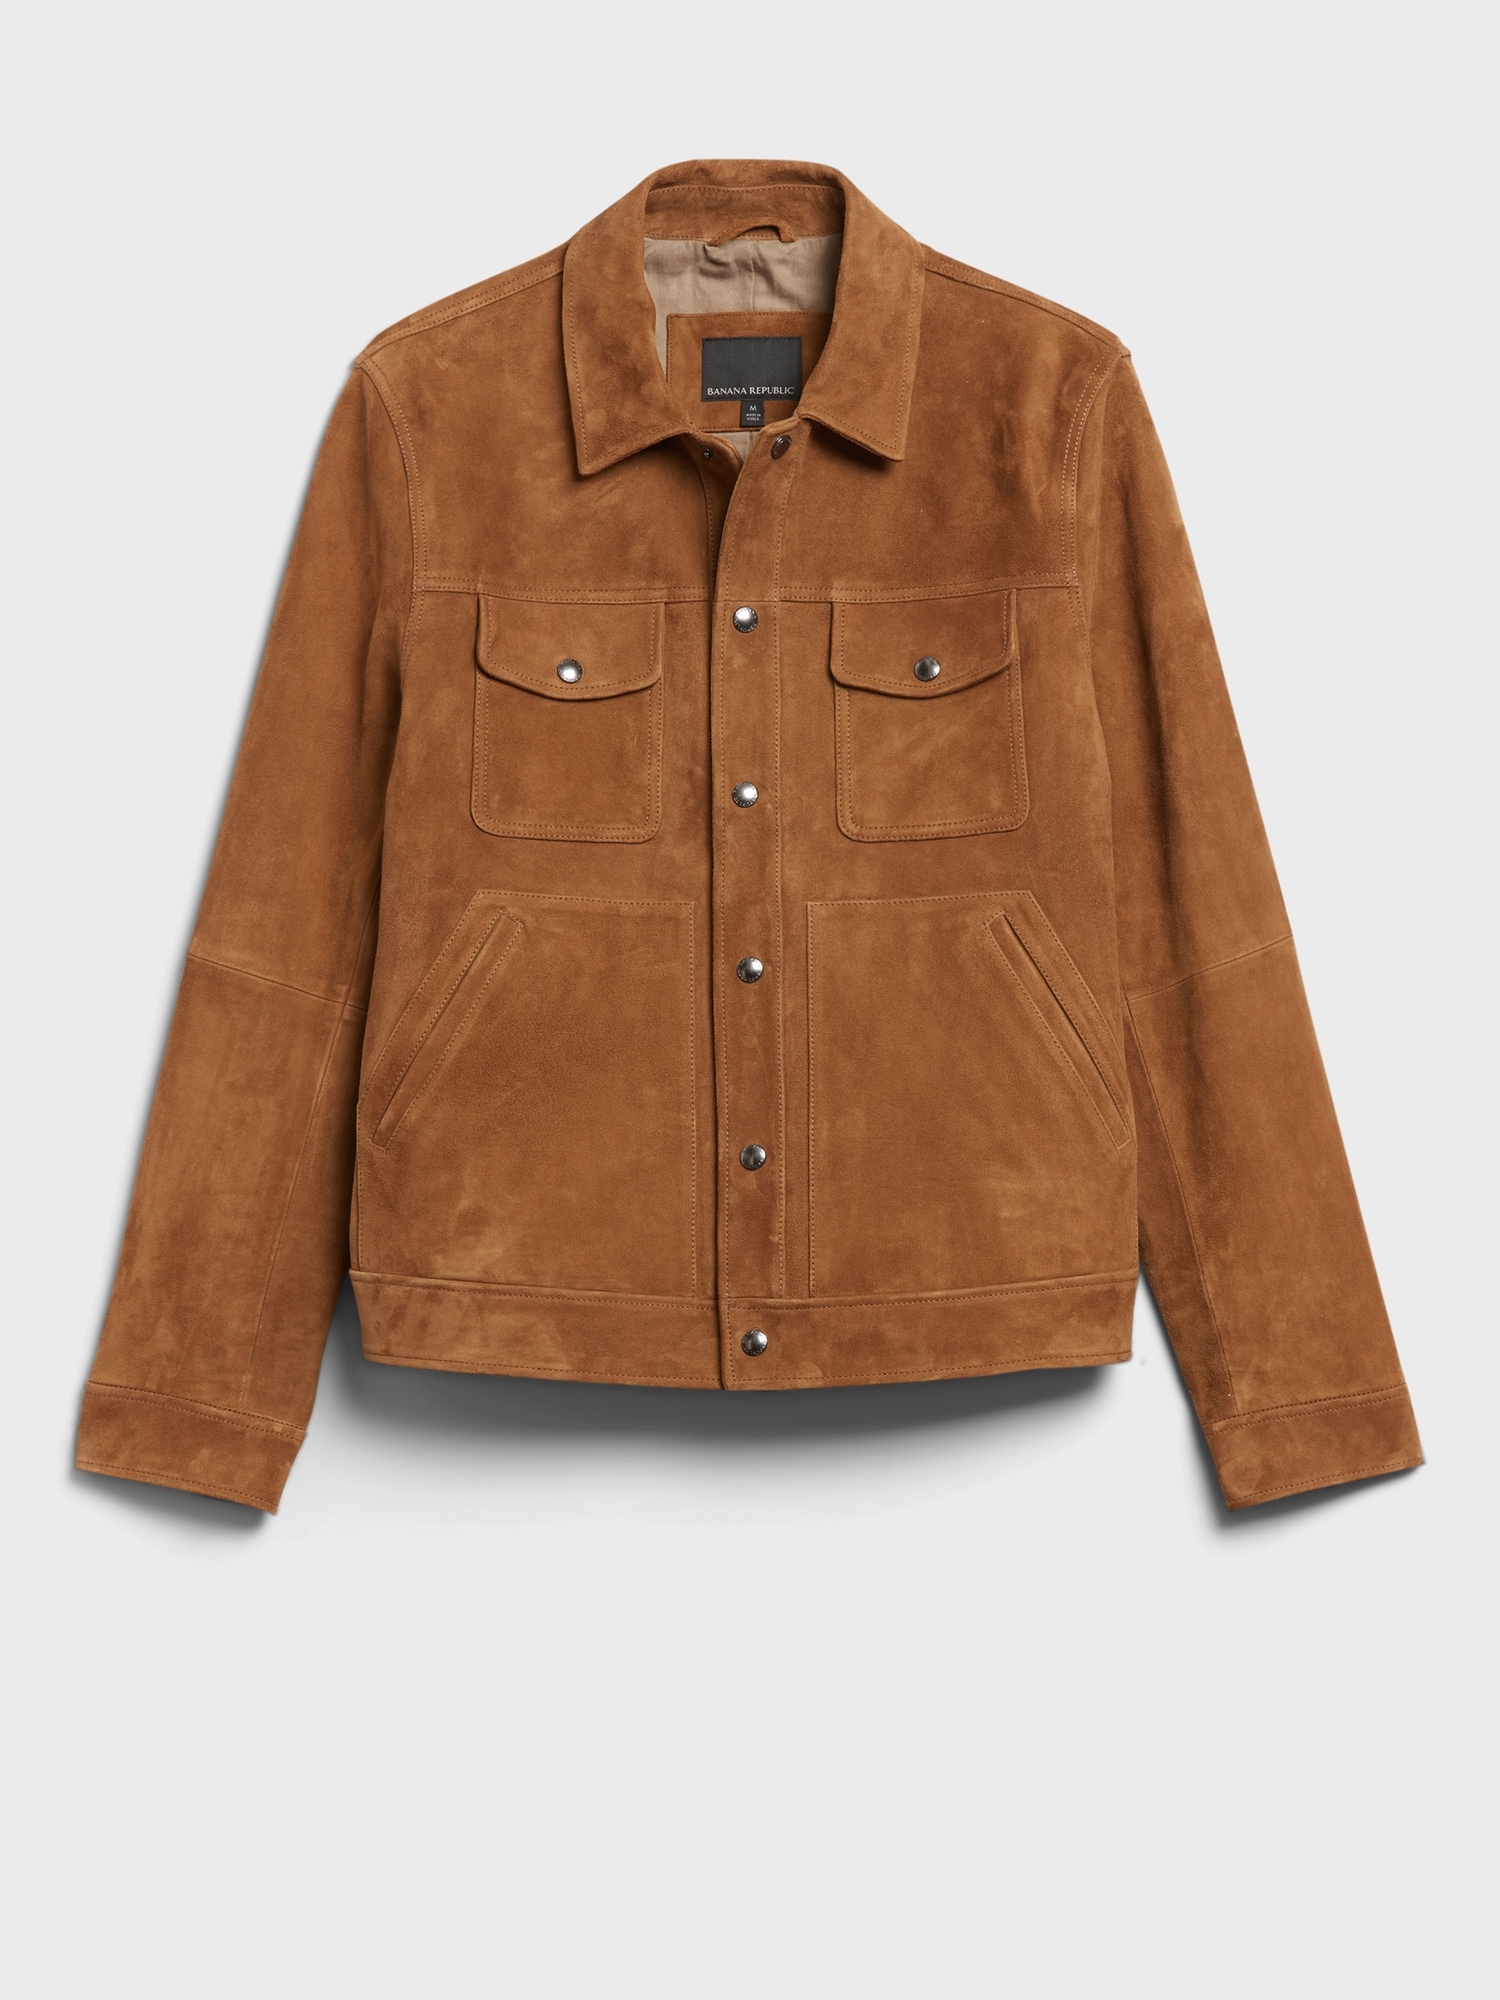 即出荷可能 ''BANANA REPUBLIC''Suede Jacket Leather レザージャケット